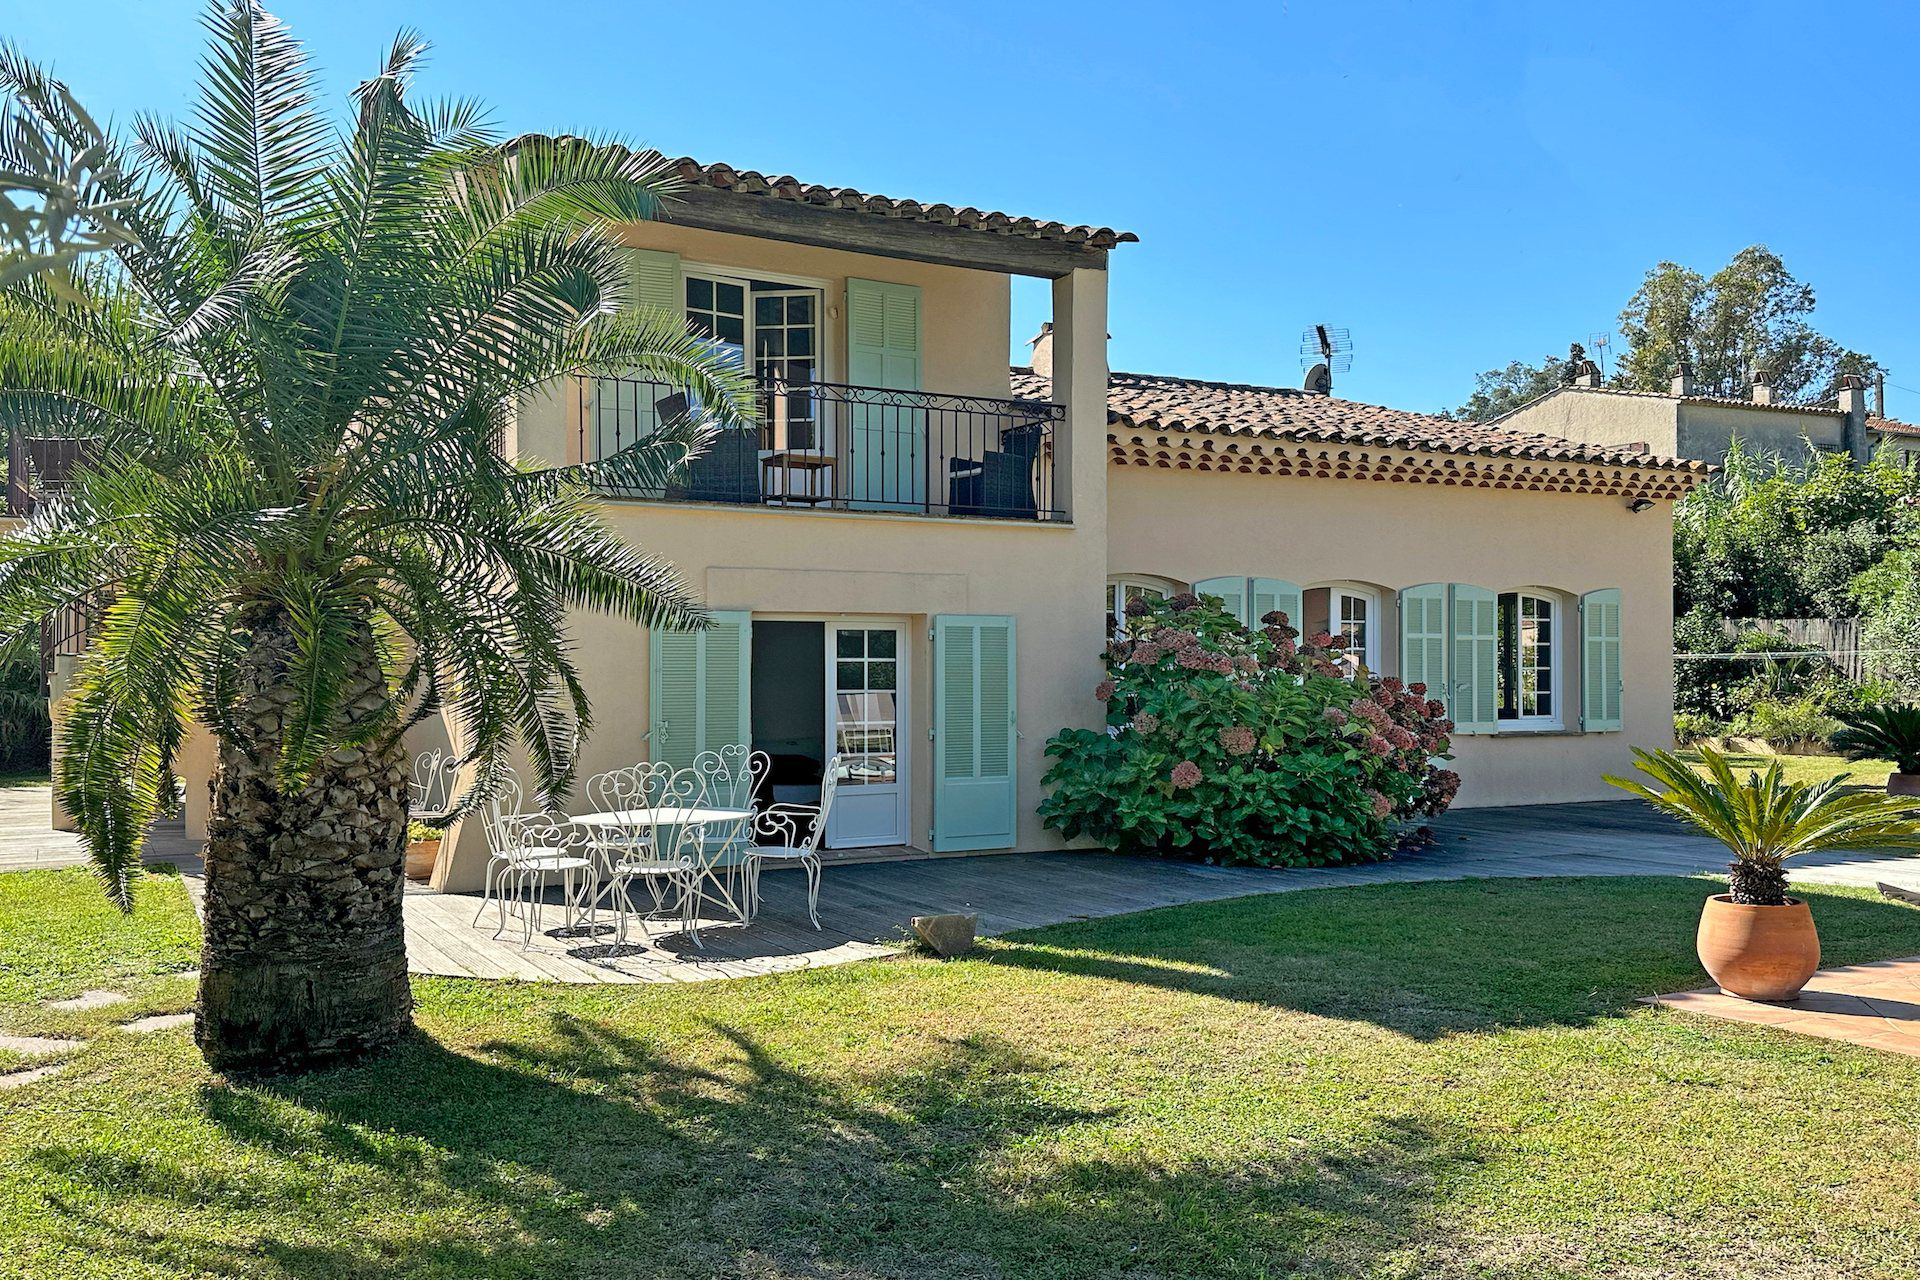 Méditerranée Location Villa with Private pool in Saint-Tropez, Côte d'Azur